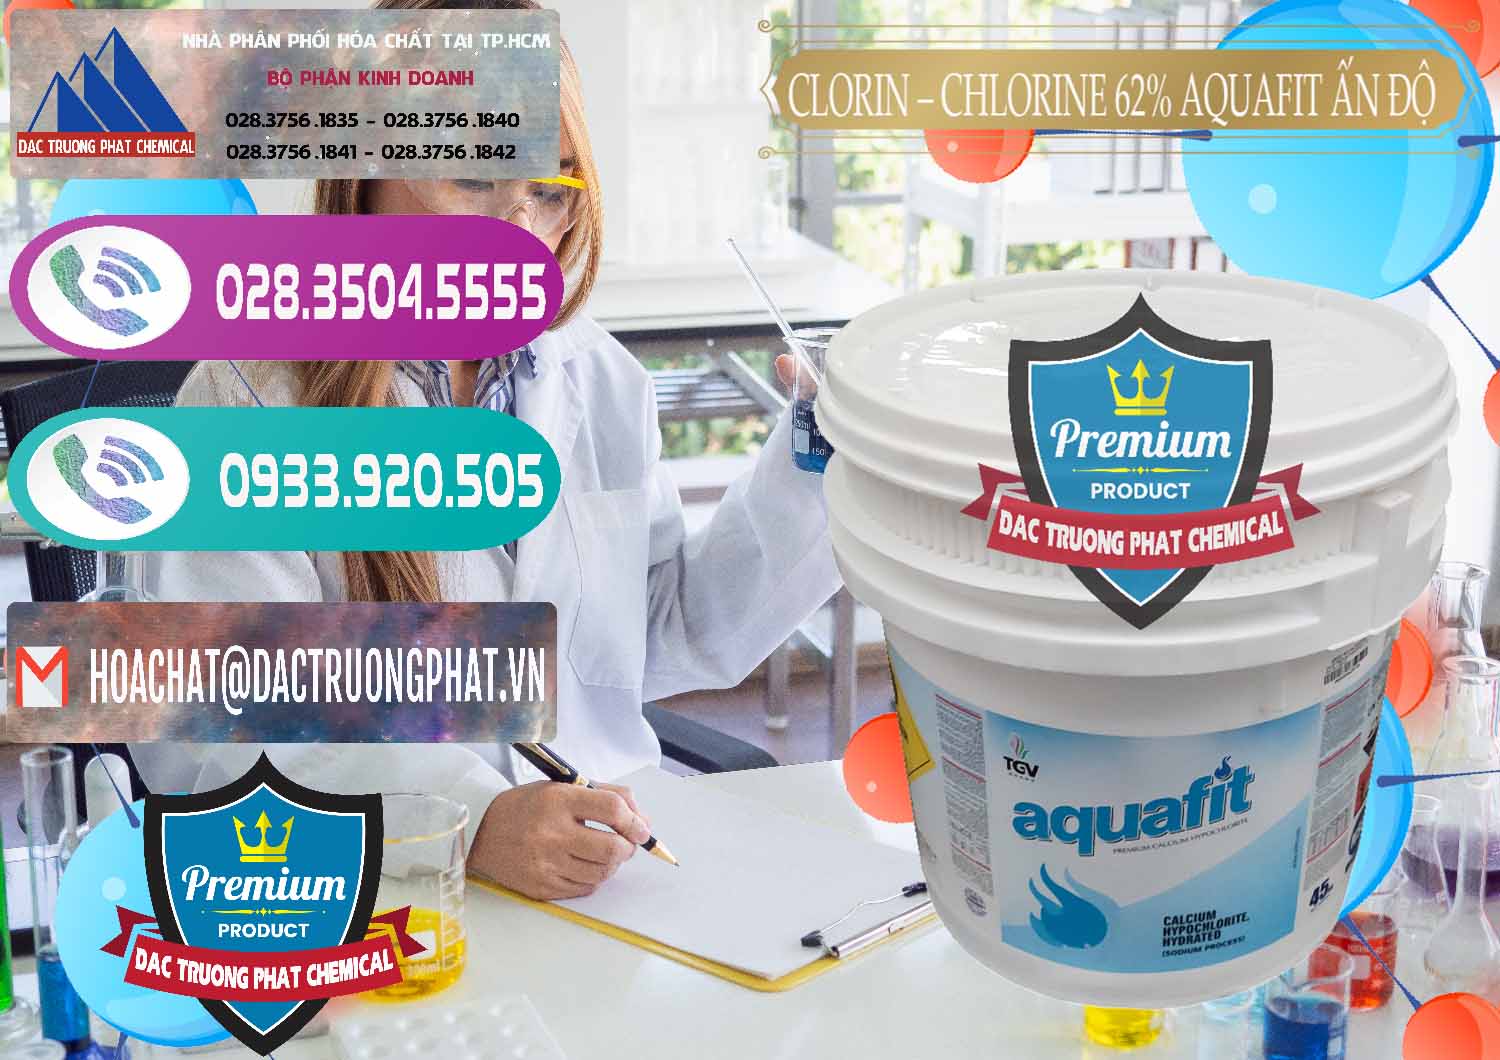 Nơi chuyên phân phối ( bán ) Clorin - Chlorine 62% Aquafit Thùng Lùn Ấn Độ India - 0057 - Công ty chuyên cung cấp - kinh doanh hóa chất tại TP.HCM - hoachatxulynuoc.com